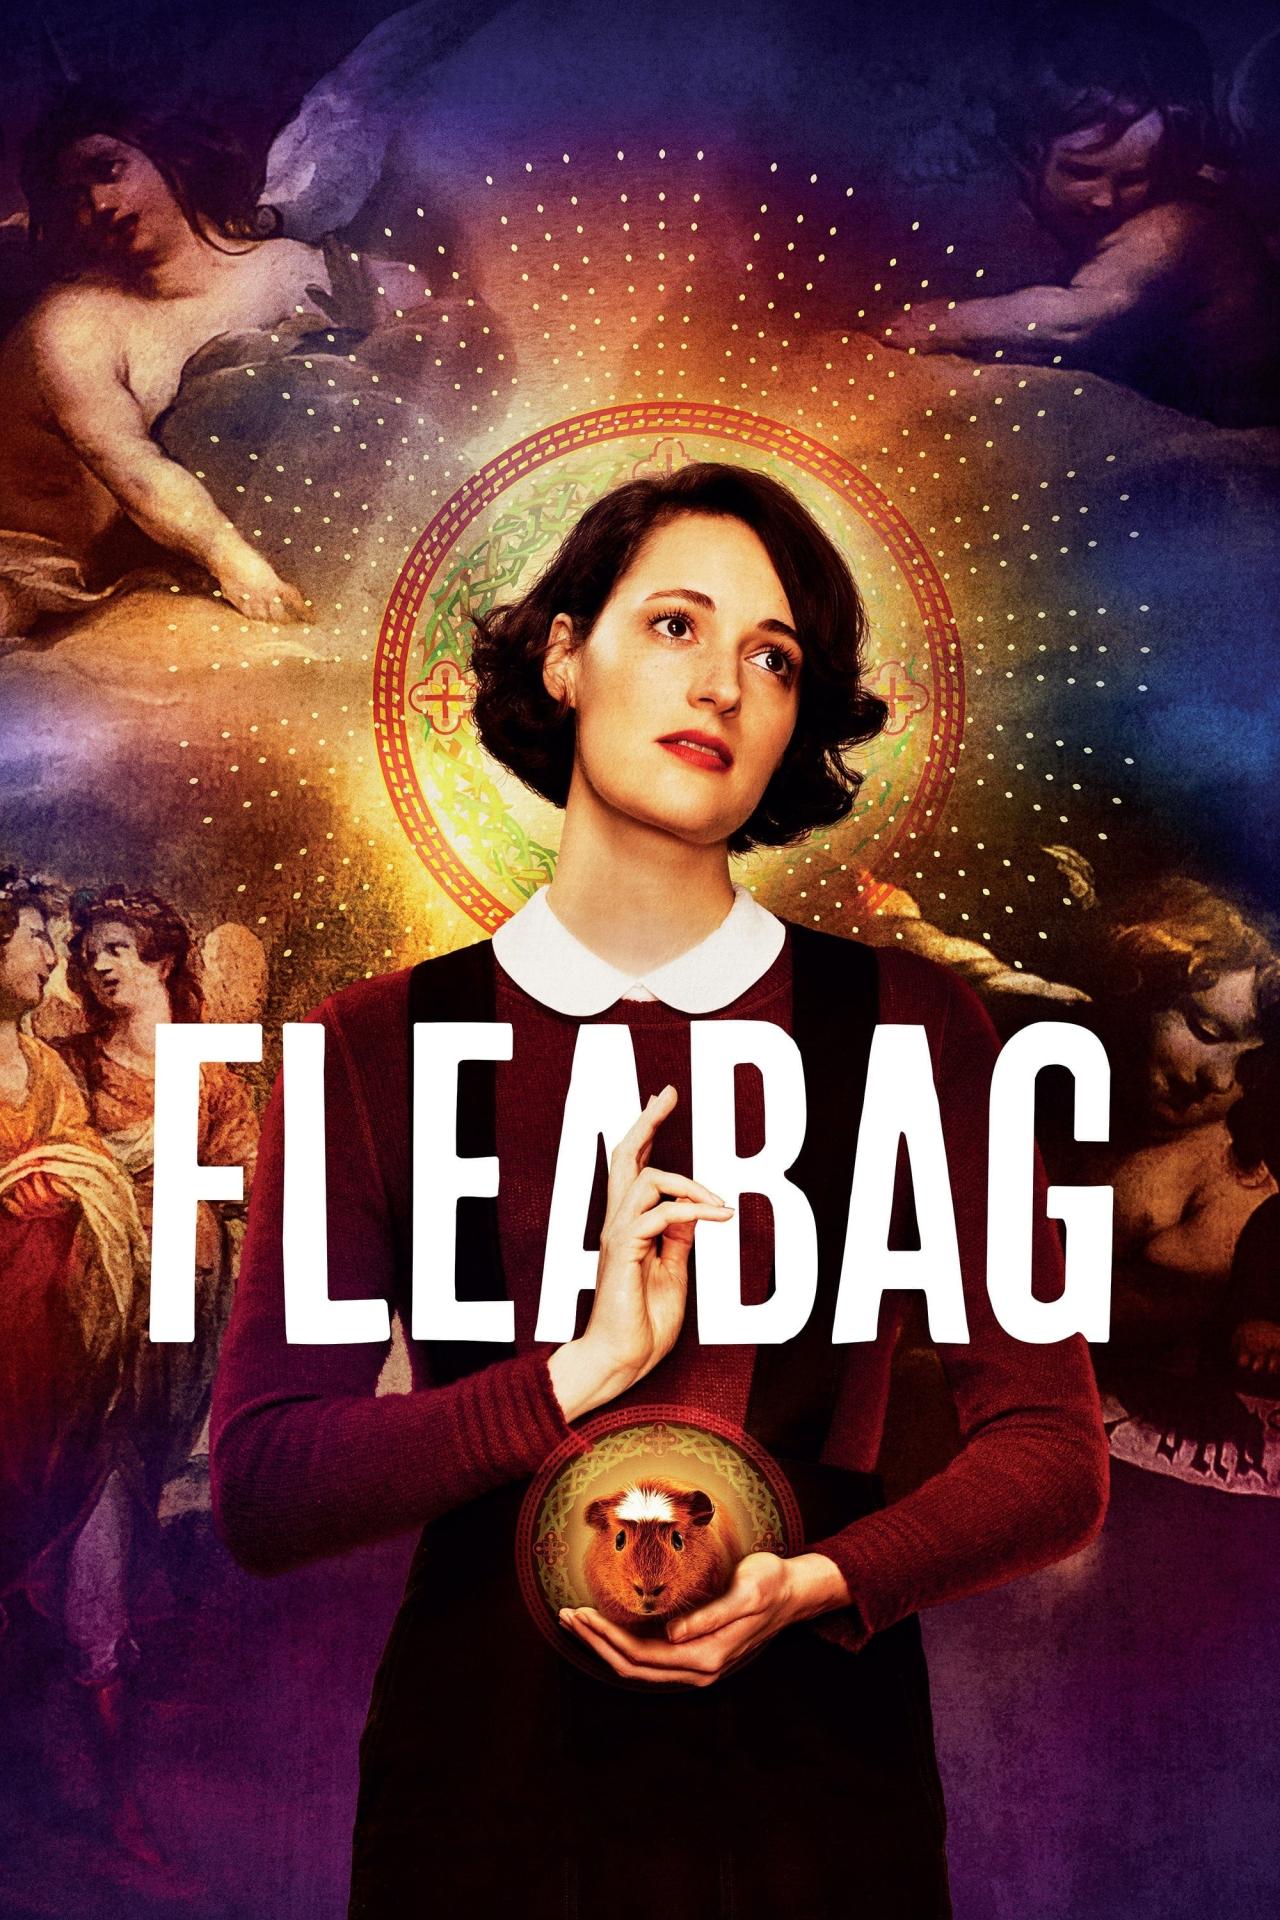 Affiche de la série Fleabag poster